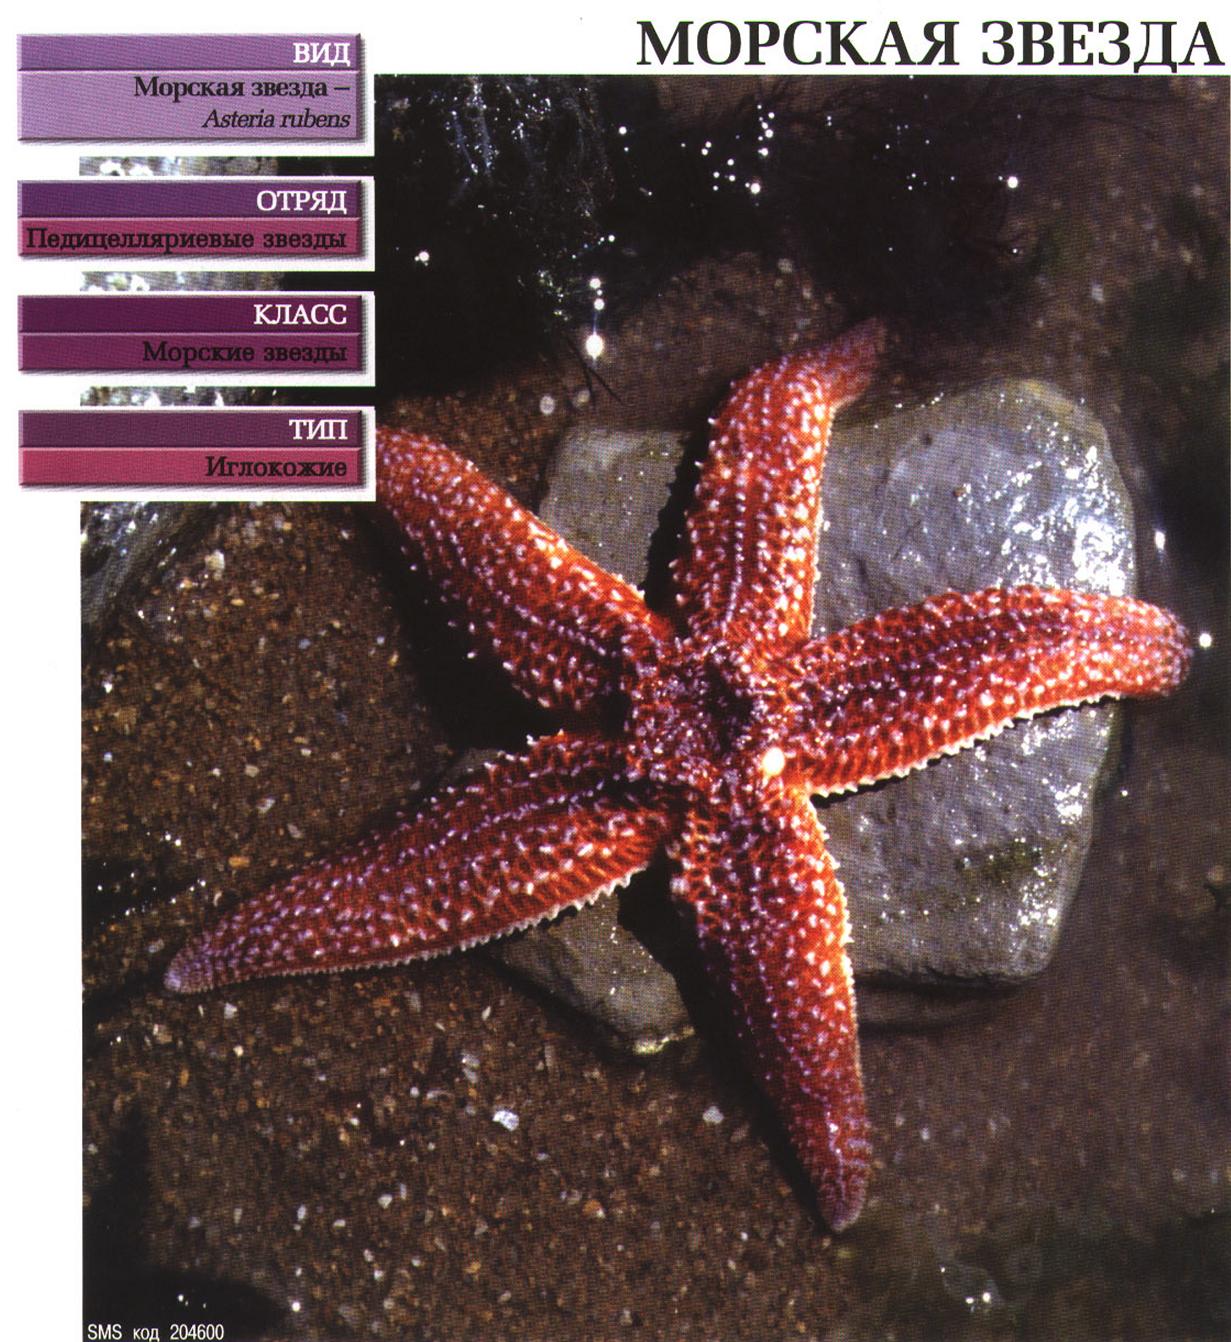 Морские звёзды на примере европейской звезды Asteria rubens.